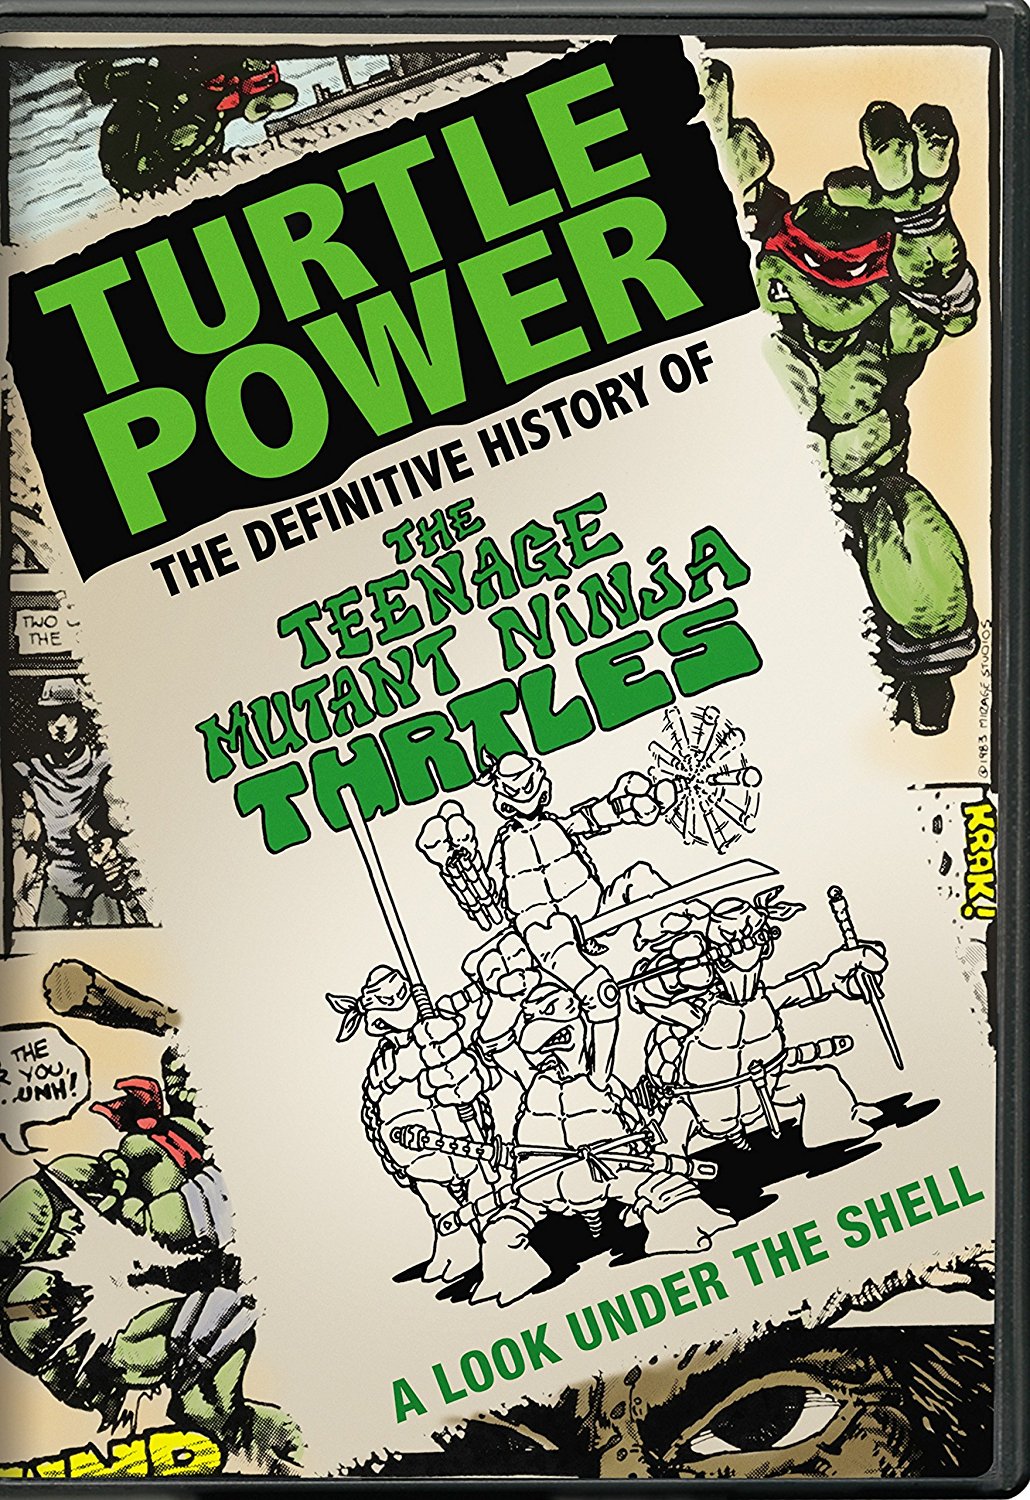 teenage mutant ninja turtle games